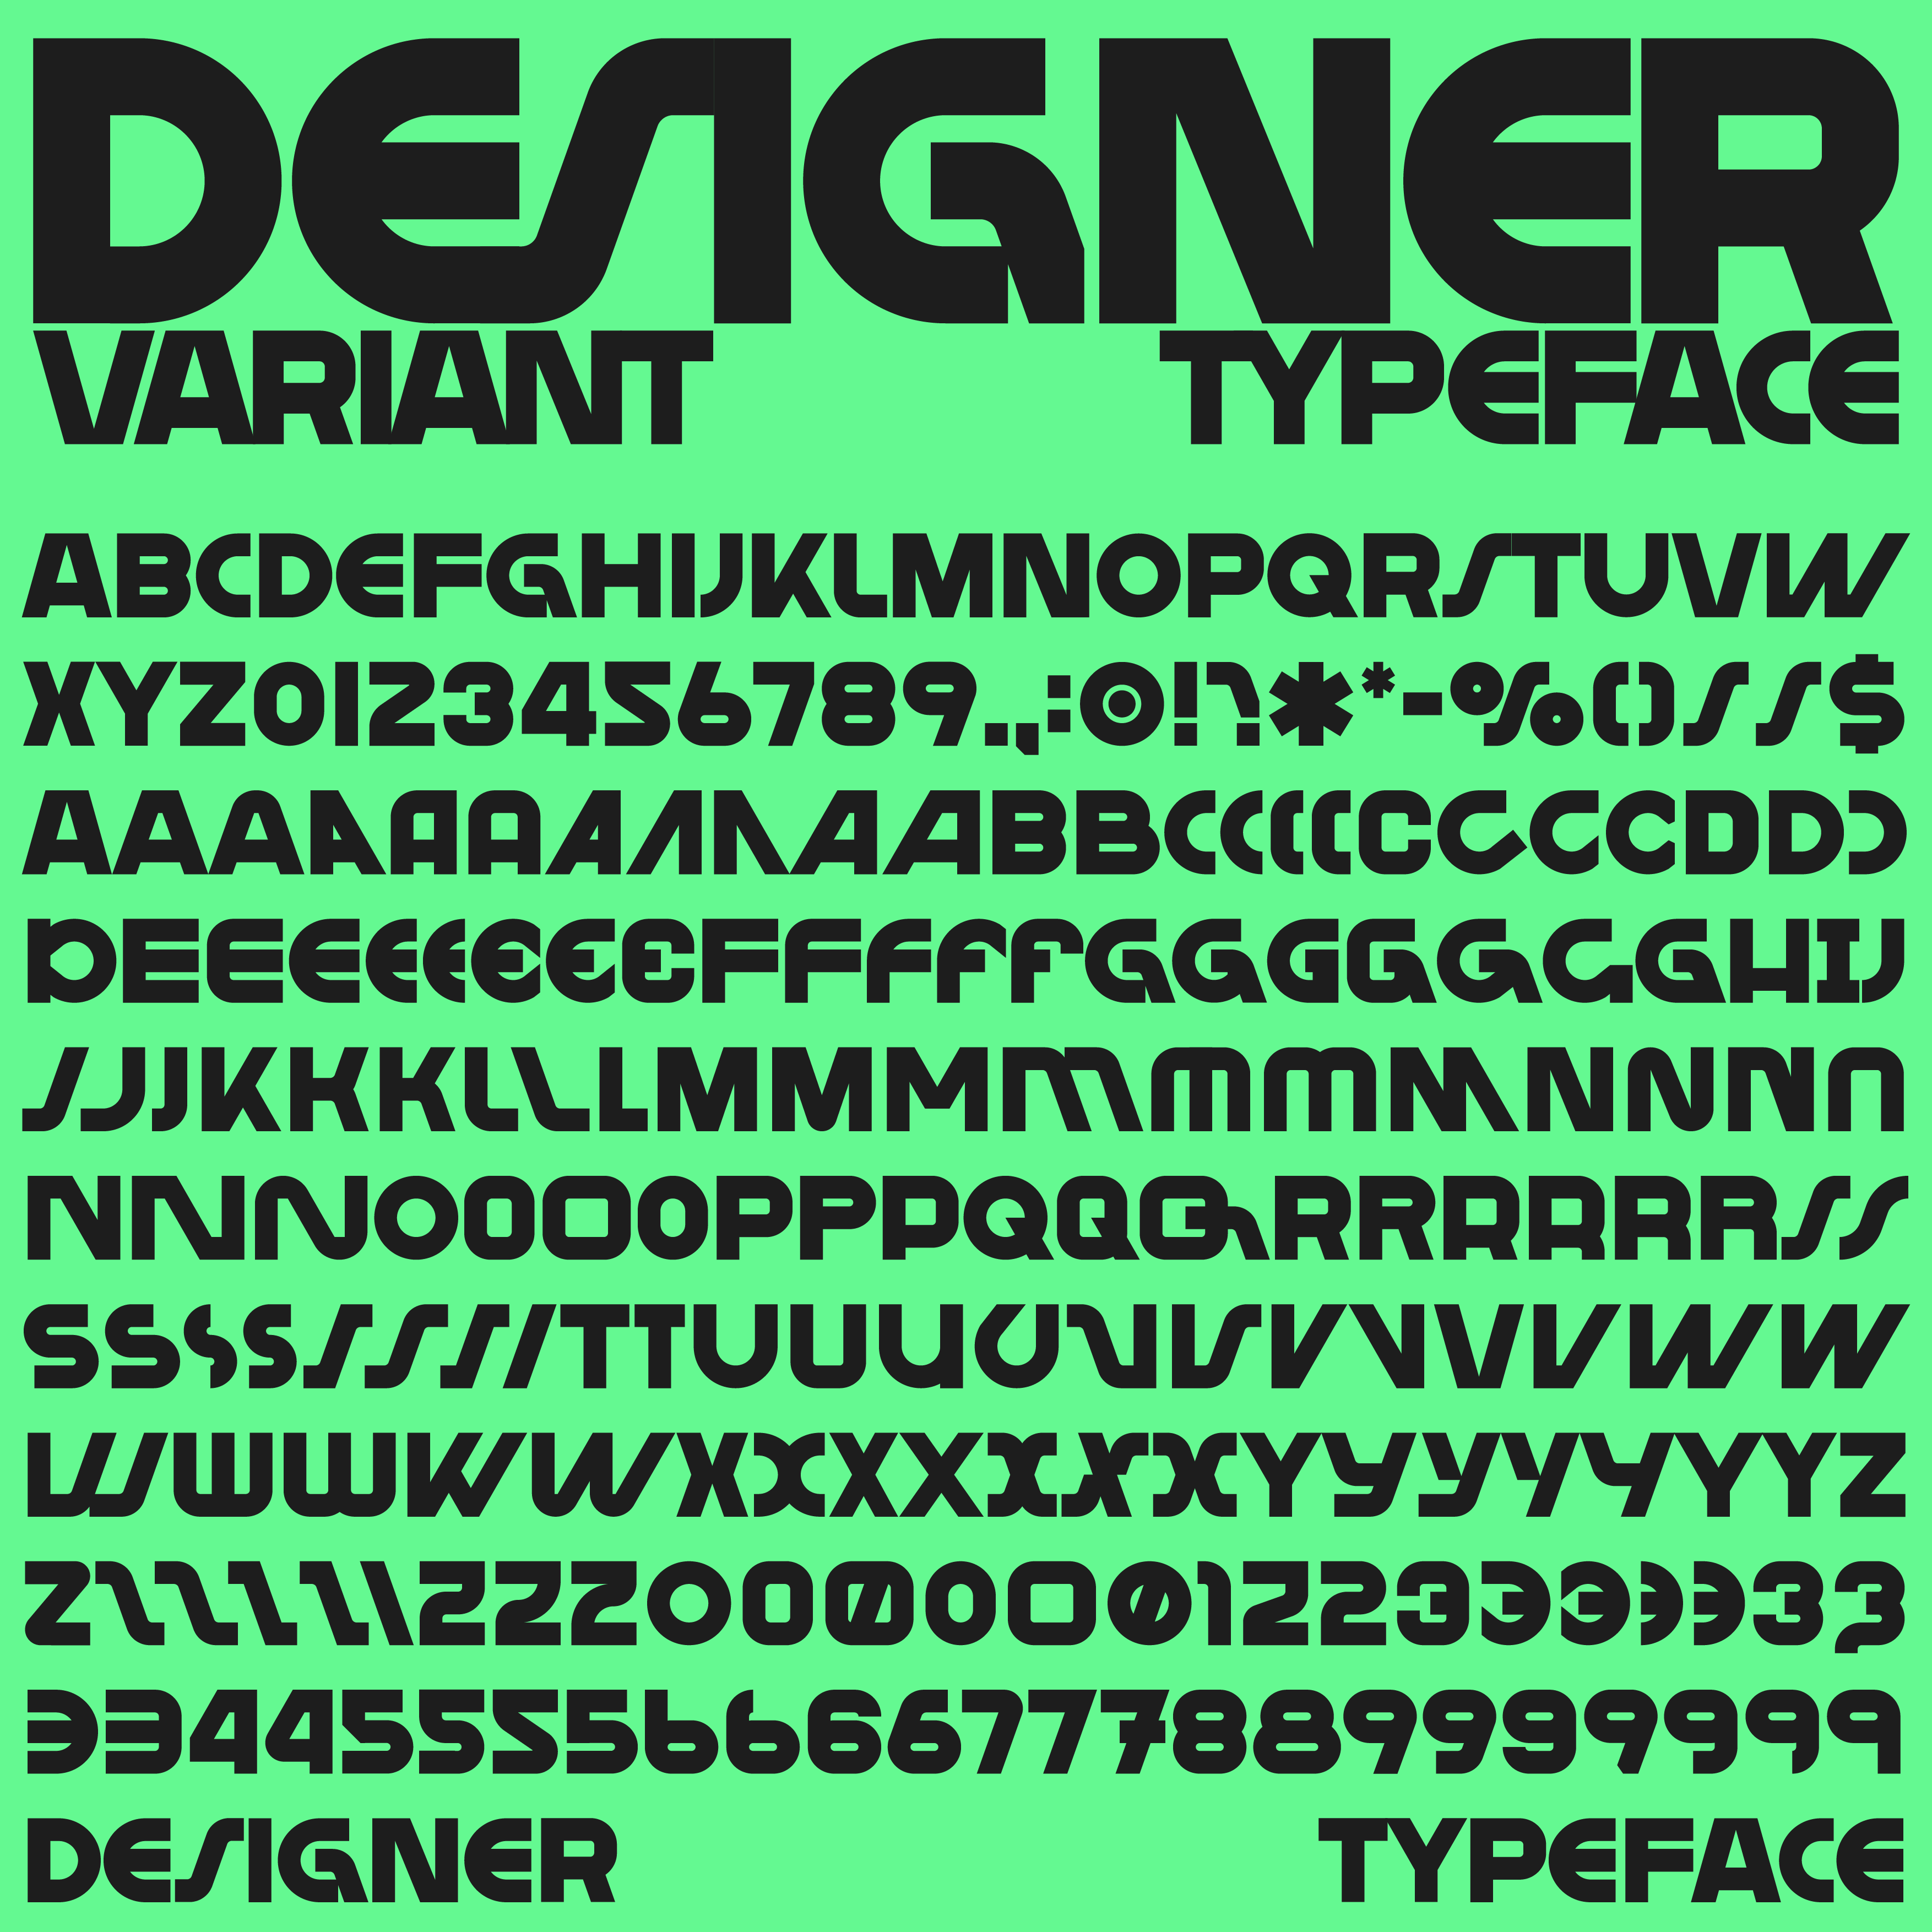 Designer Typeface